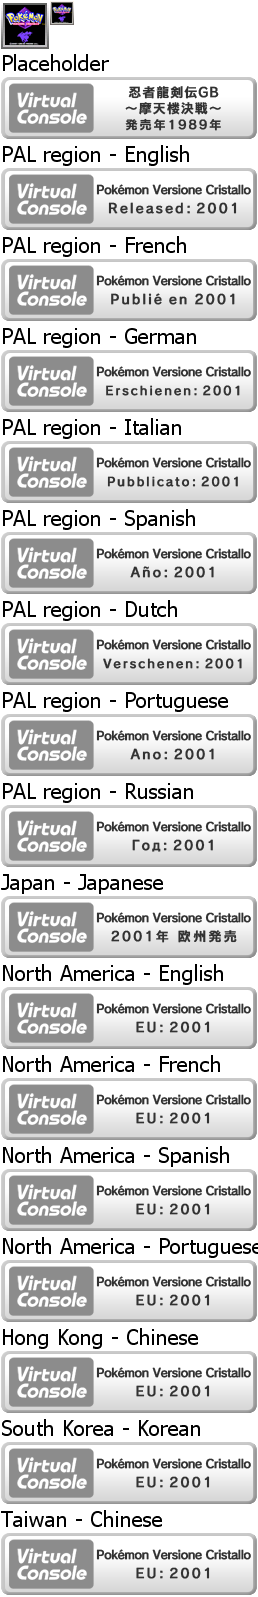 Virtual Console - Pokémon Versione Cristallo